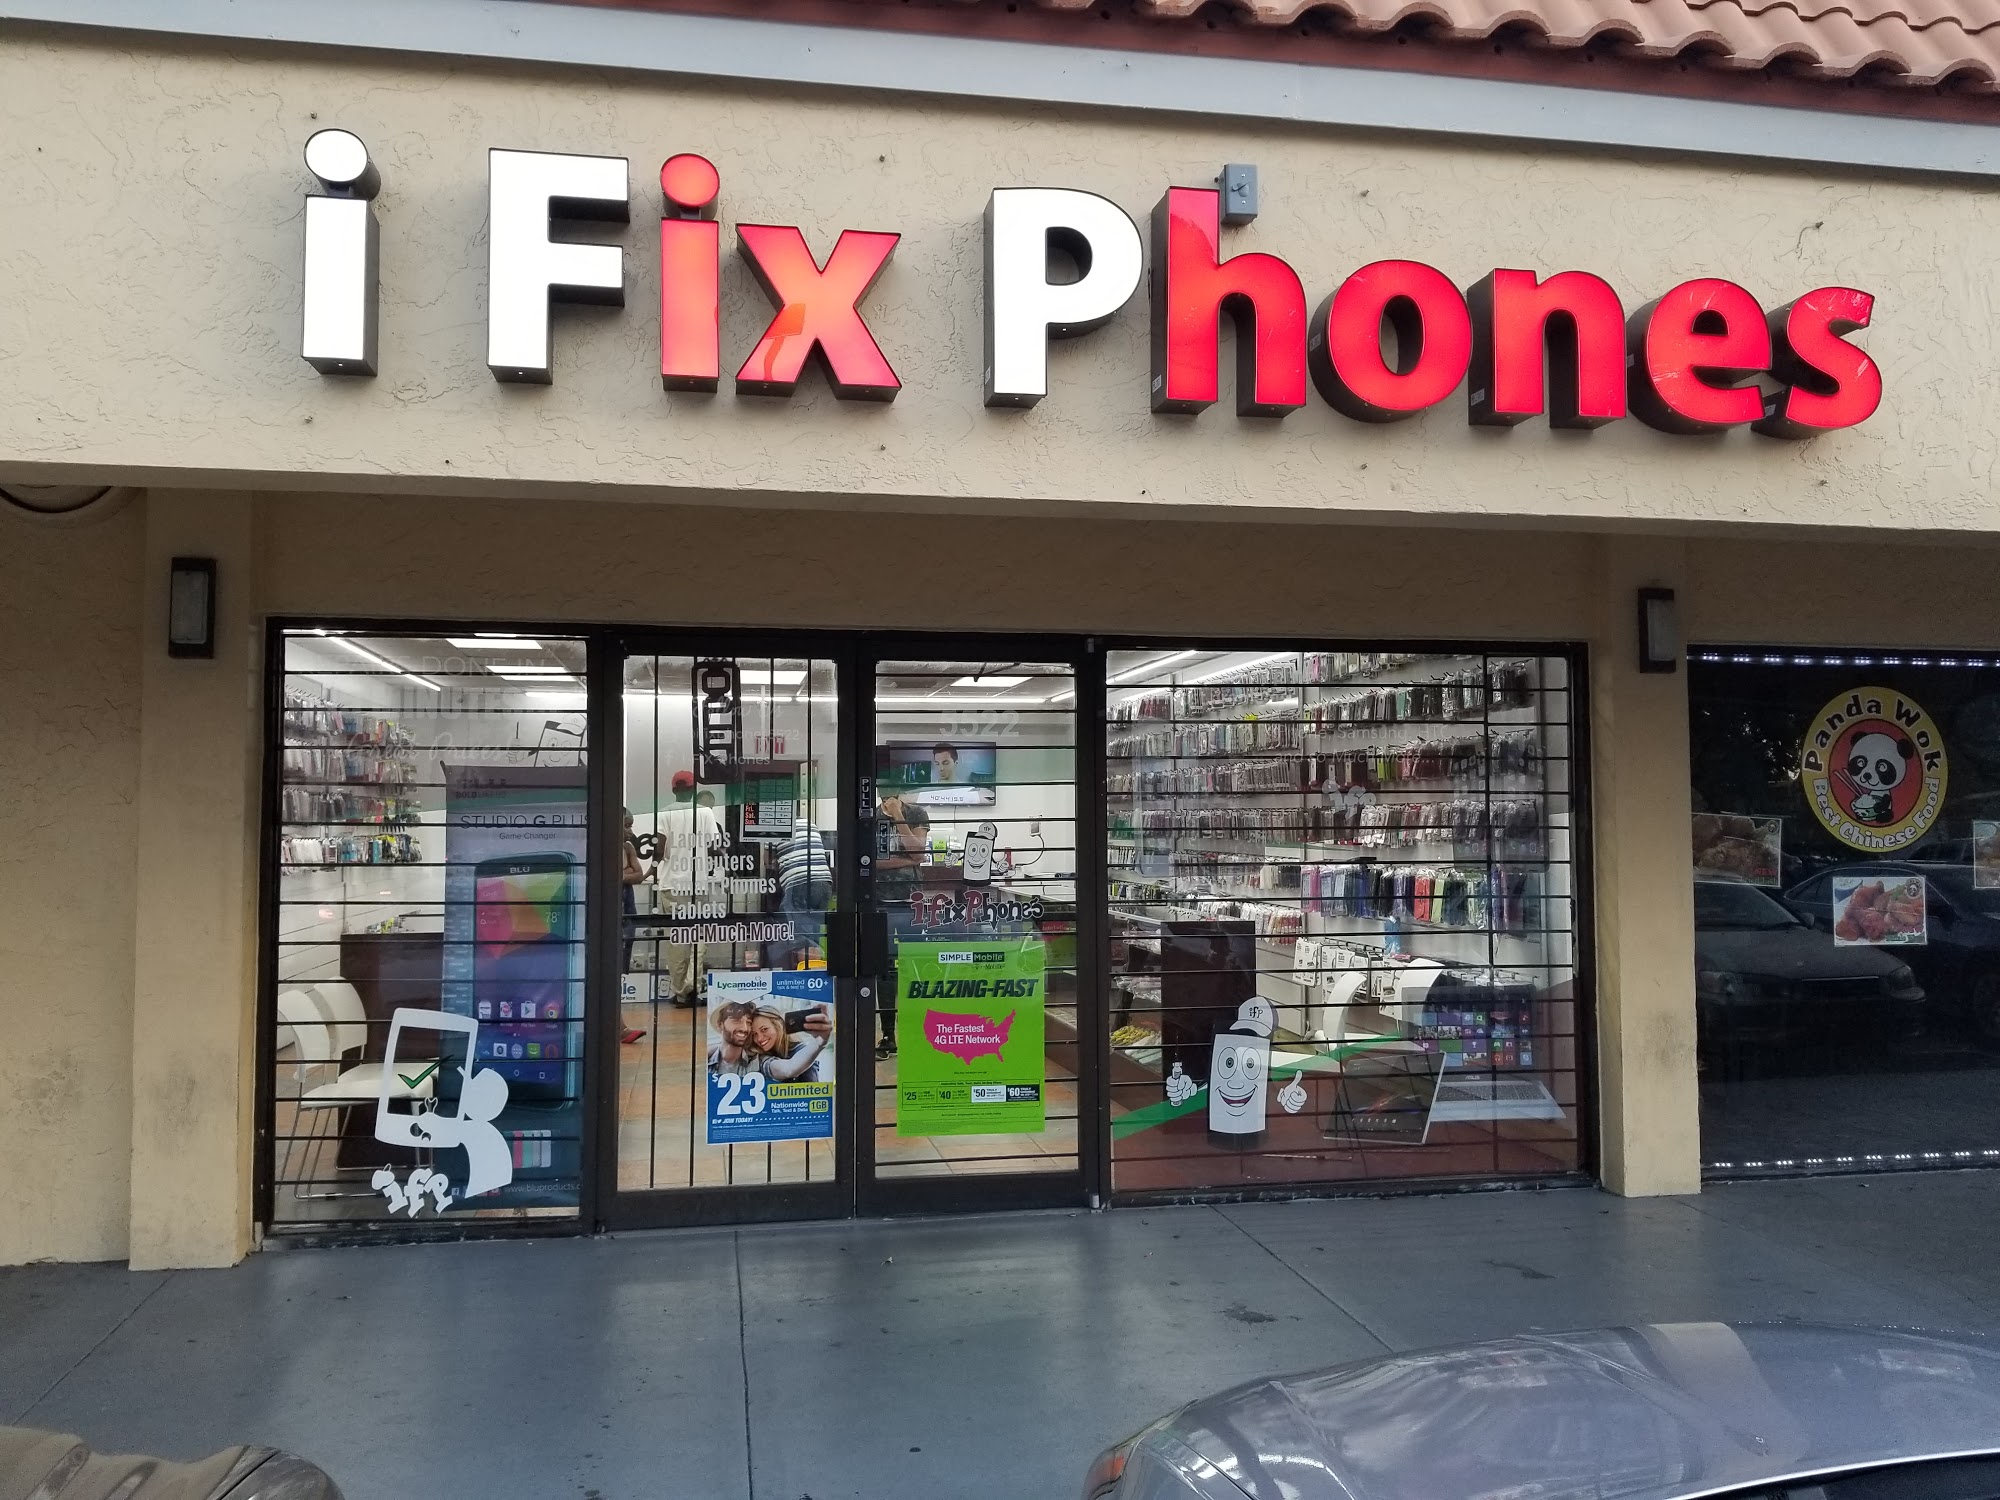 iFixPhones